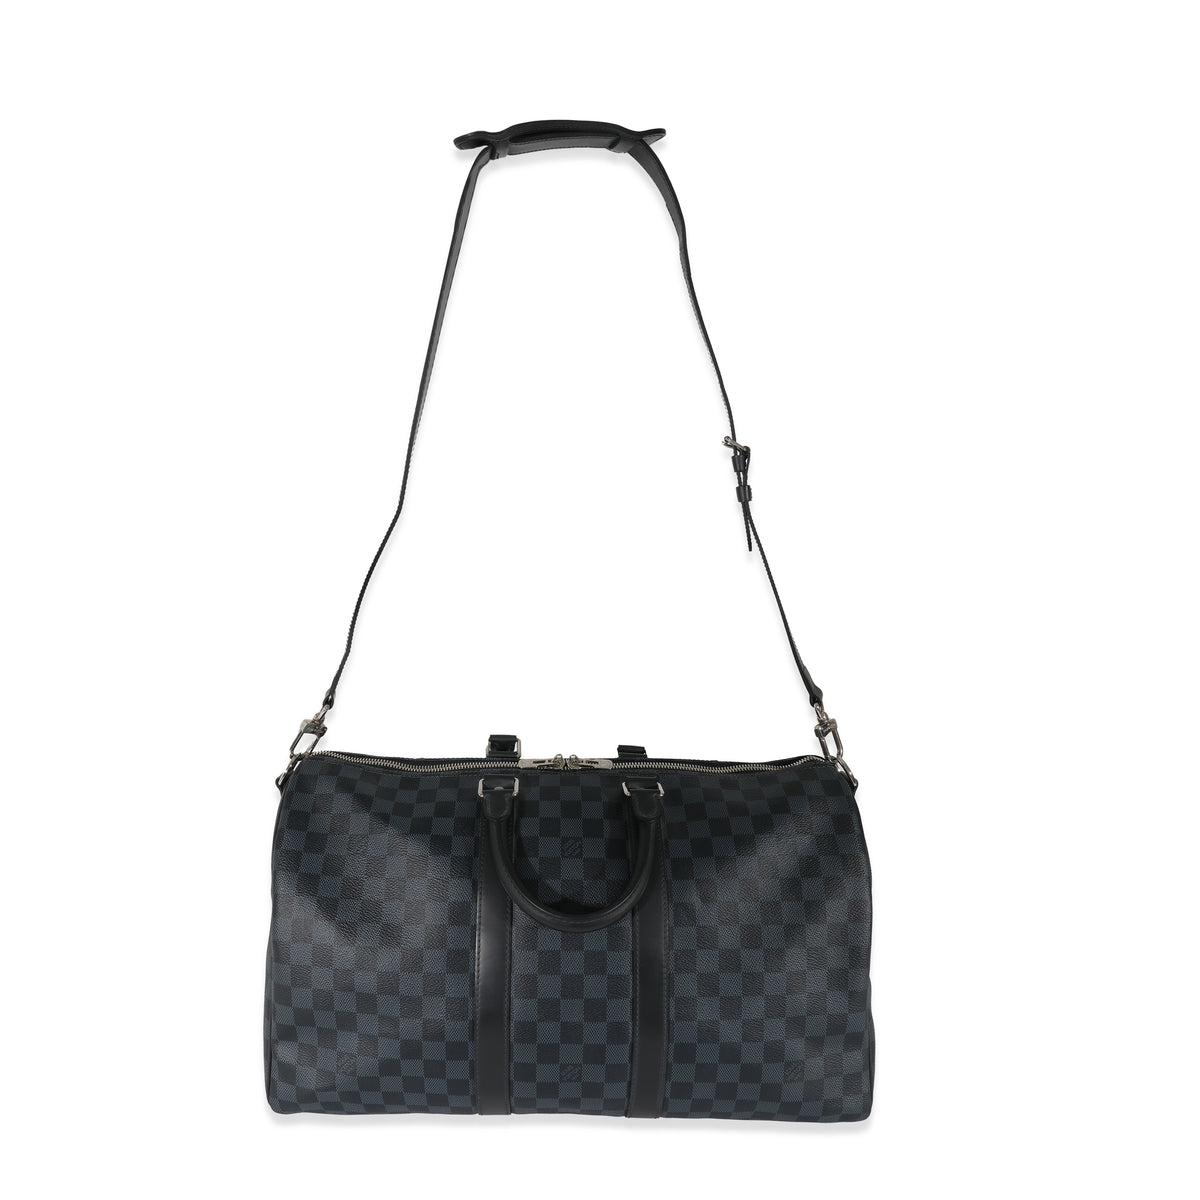 Louis Vuitton Keepall Bandouliere Bag Damier Cobalt 45 Blue